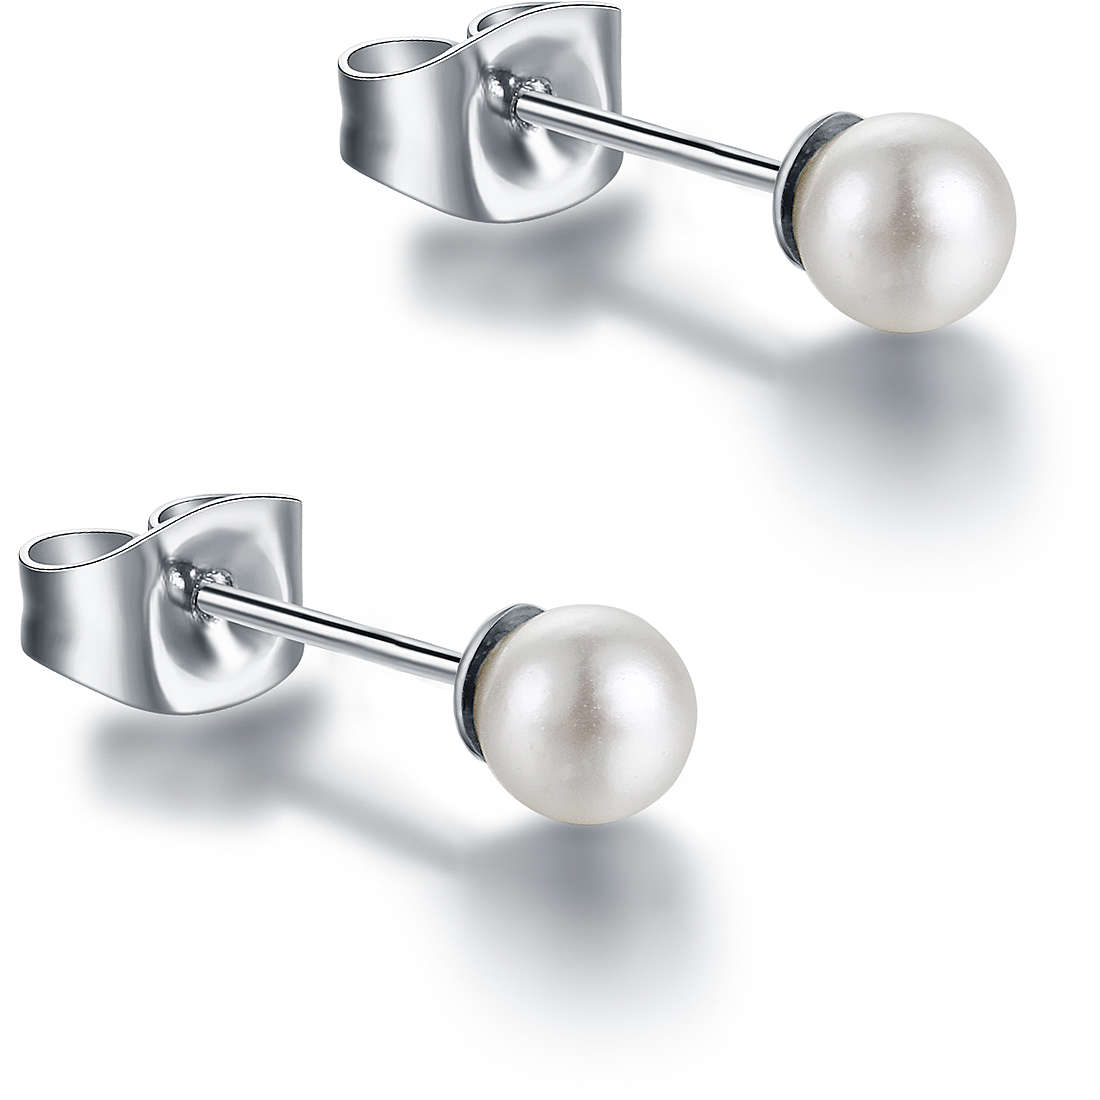 orecchini donna gioielli Brand Perle Di Luna 14ER013